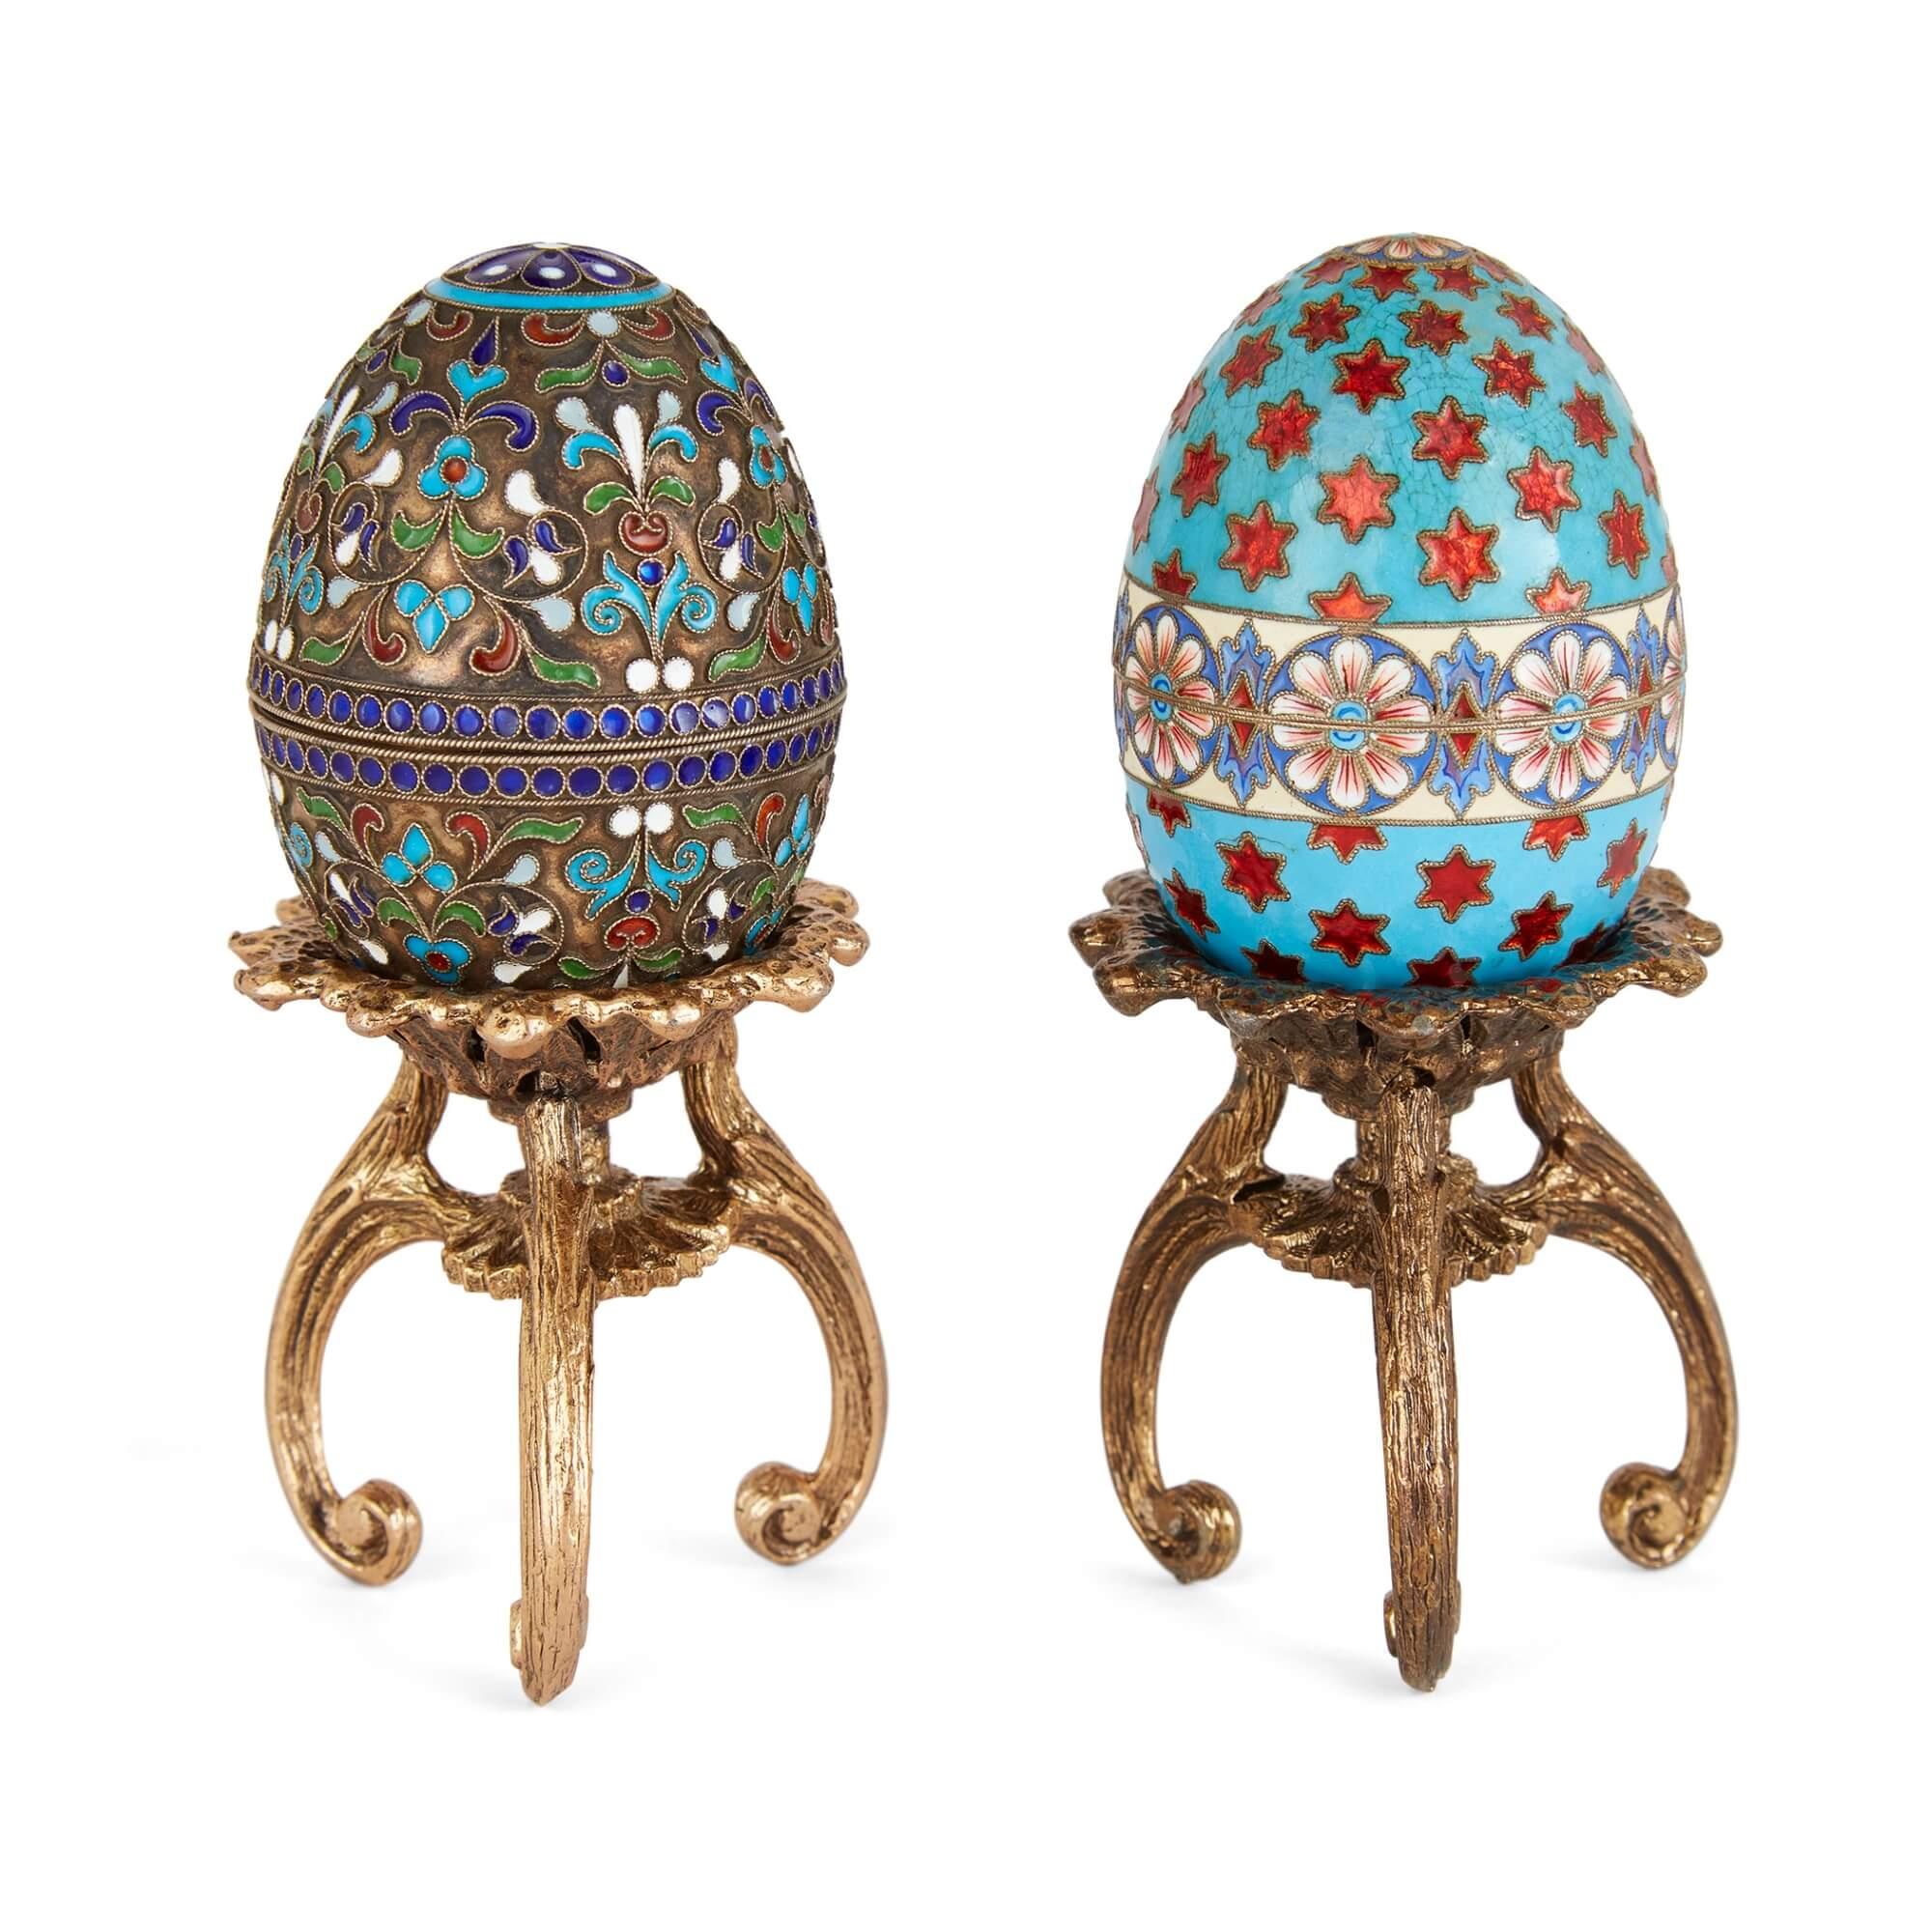 Zwei russische Eier aus vergoldetem Silber und Cloisonné-Email auf Ständern  
Russisch, 20. Jahrhundert 
Höhe 12 cm, Durchmesser 4,5 cm    

Diese prächtigen russischen Eier sind aus vergoldetem Silber gefertigt und mit der komplexen Technik der